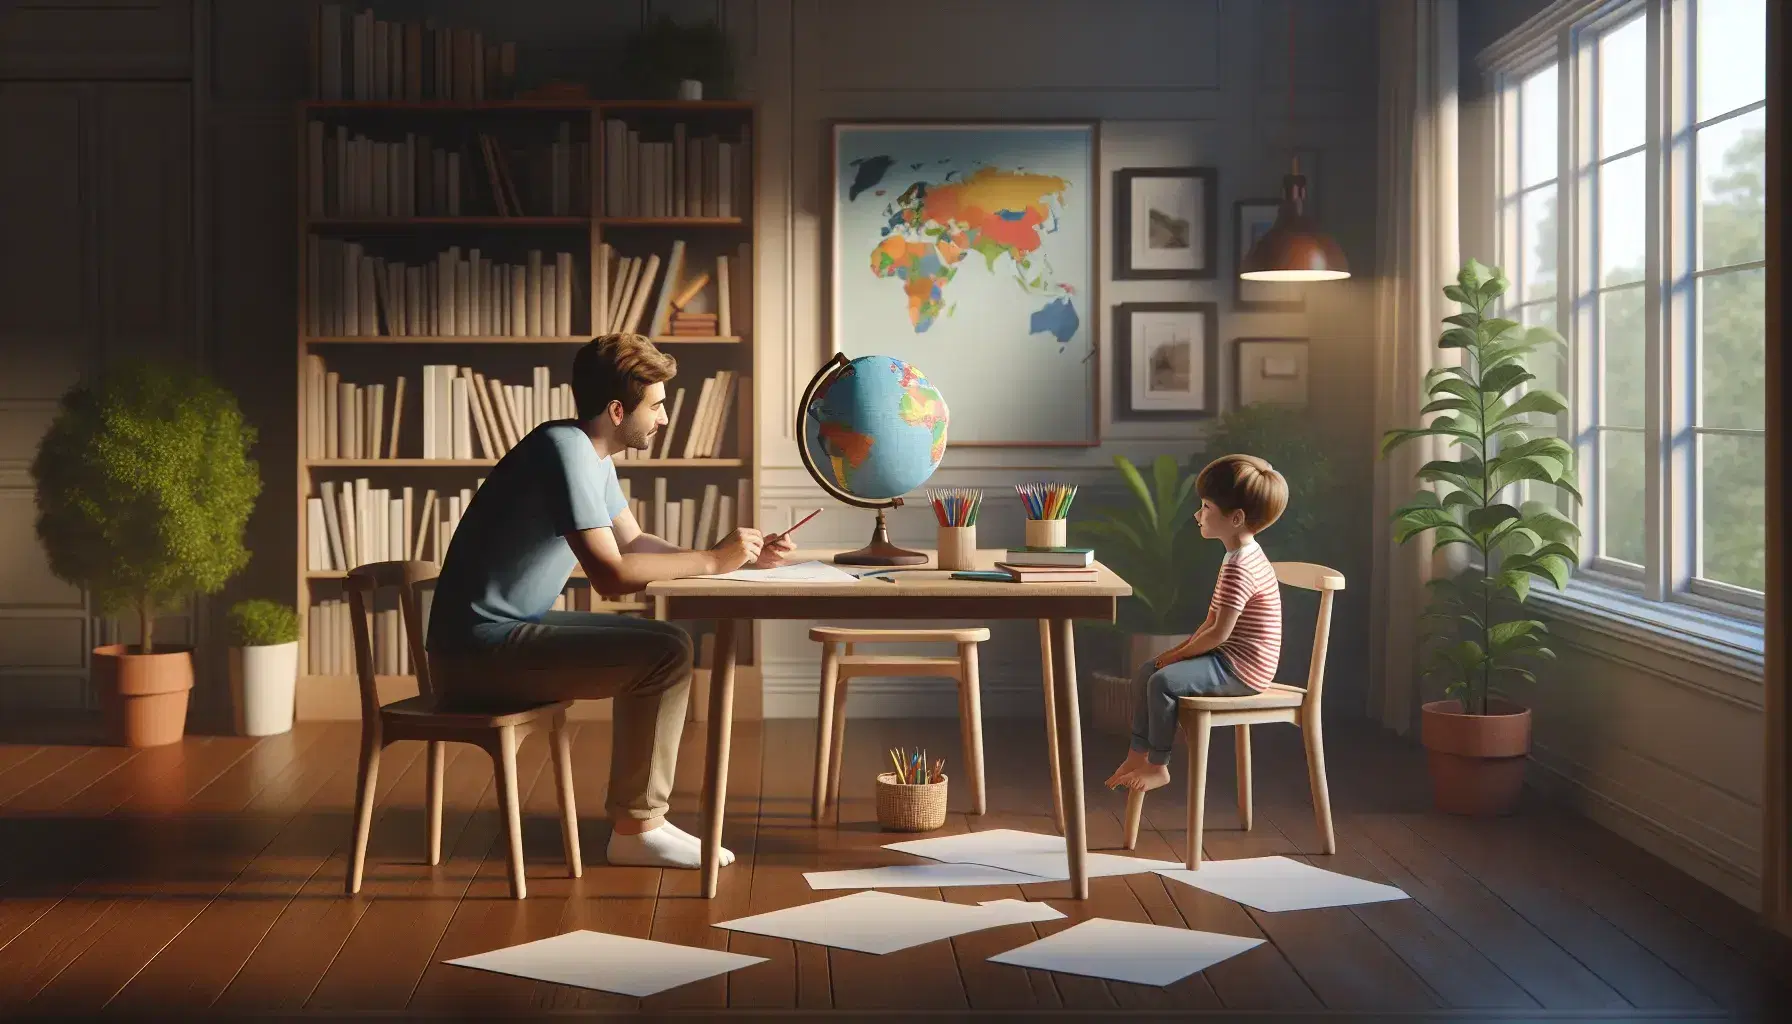 Scena familiare con adulto e bambino seduti al tavolo di legno intenti a disegnare, circondati da matite colorate e un mappamondo, in una stanza illuminata naturalmente.